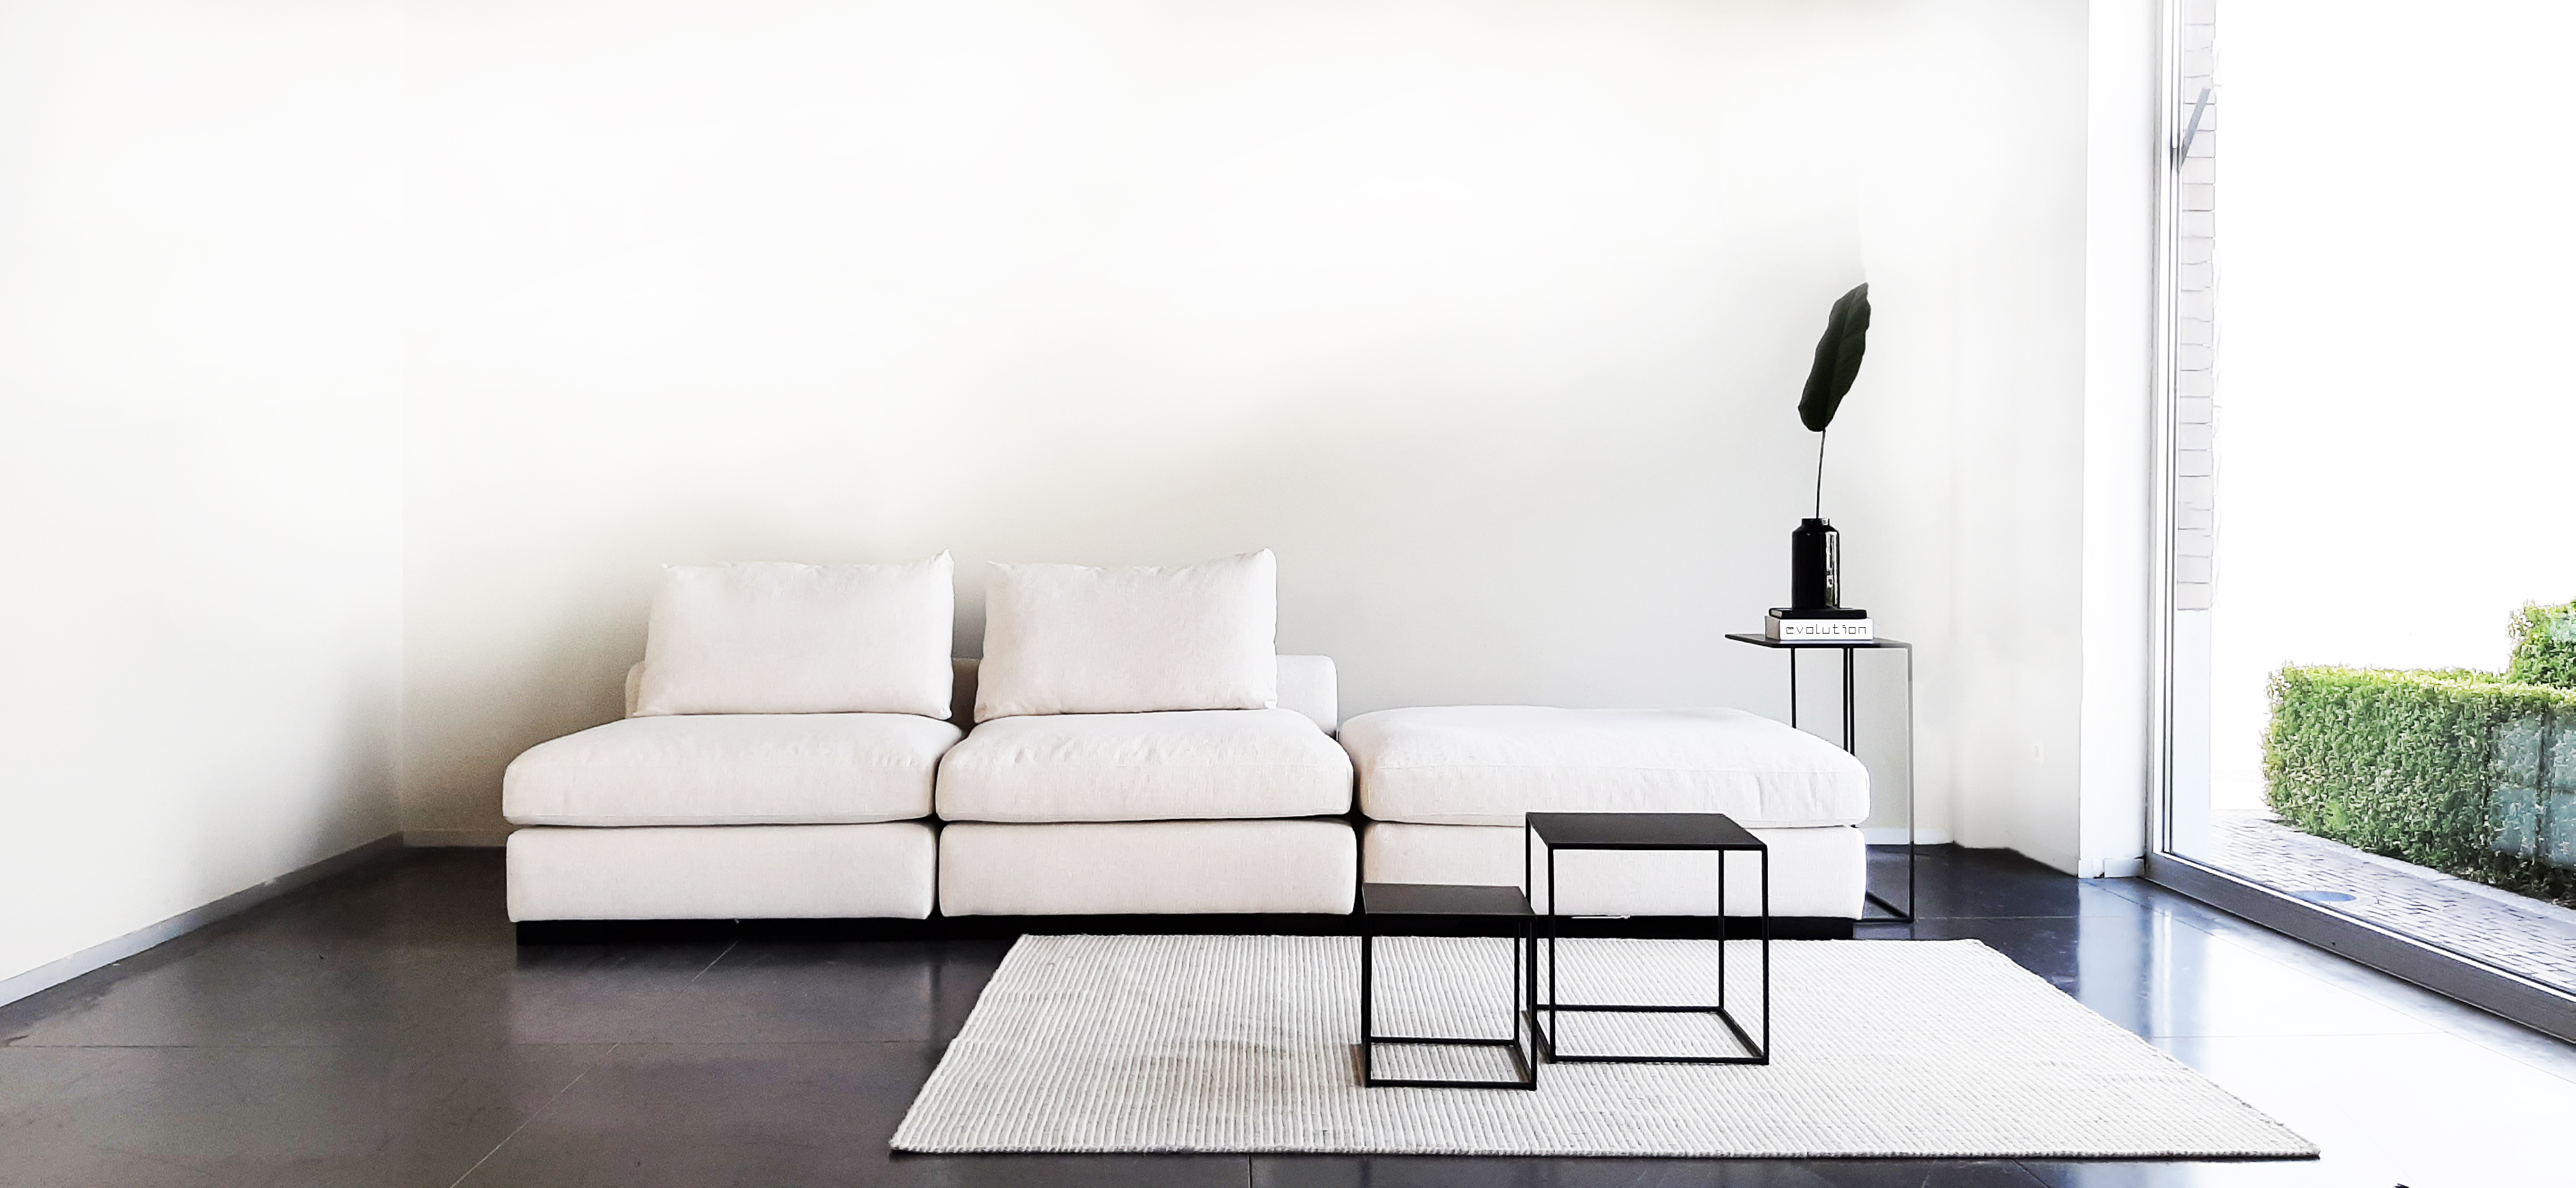 zetels: Evo Chill Small Design Sofa